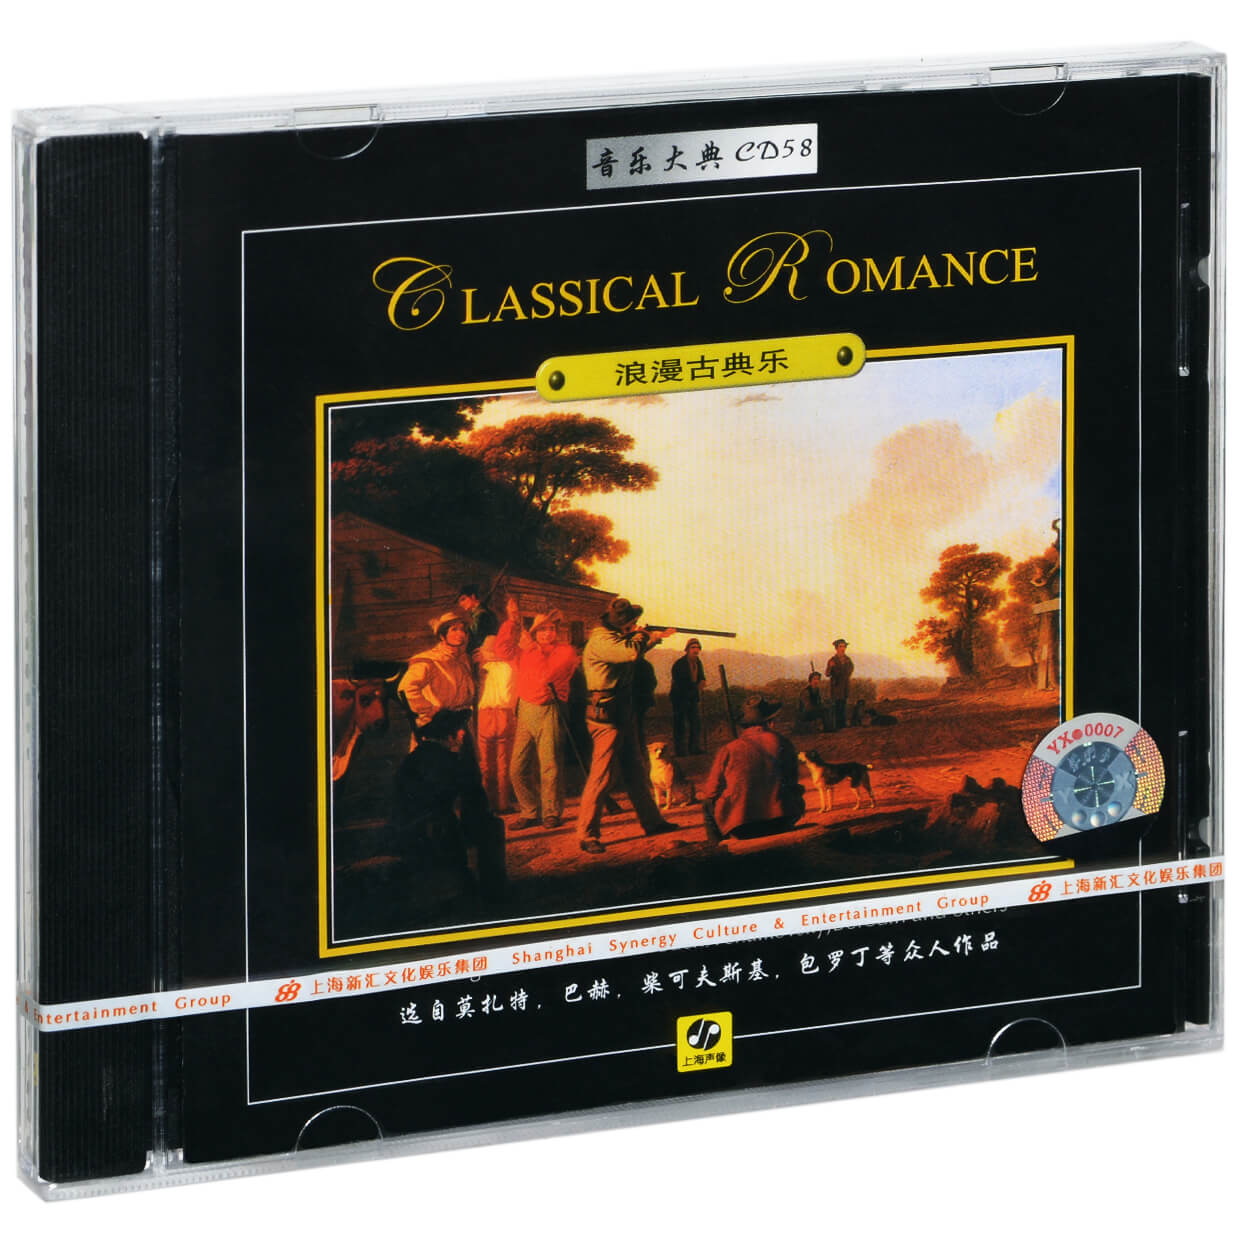 正版音乐大典58 莫扎特/巴赫/柴可夫斯基 浪漫古典乐 唱片CD碟片